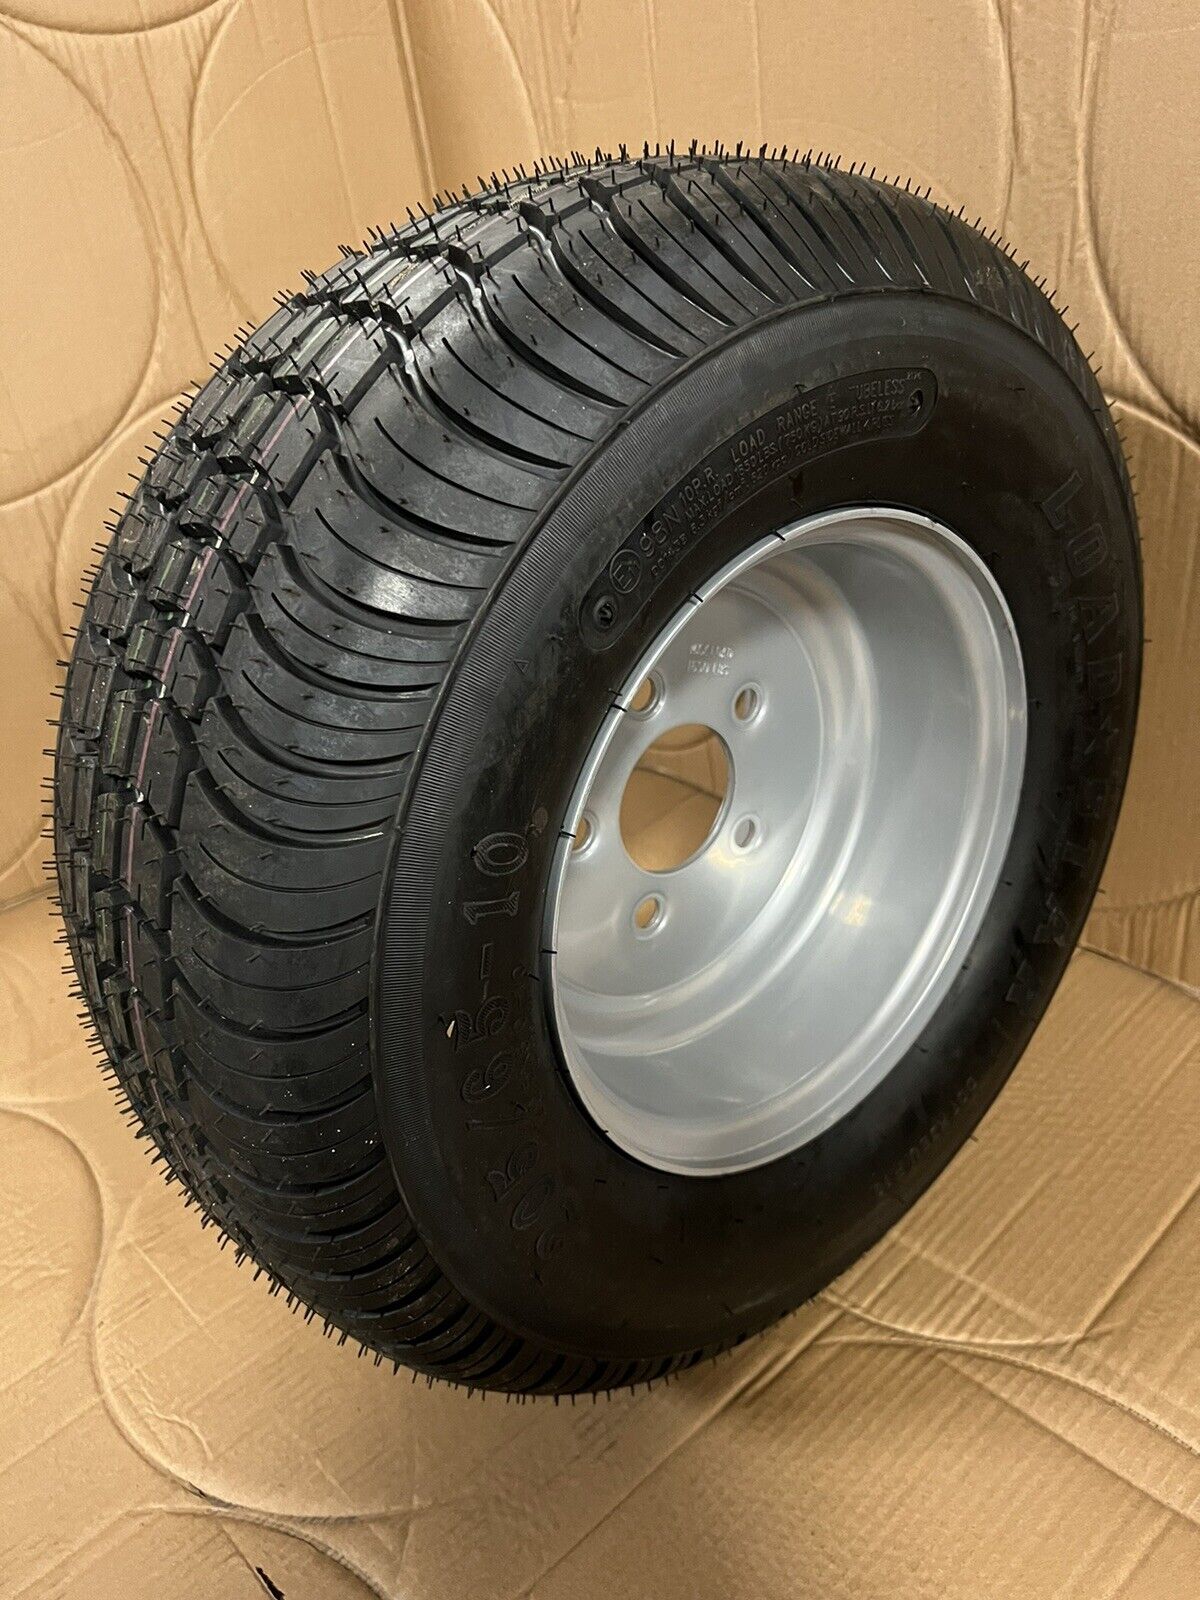 Qty 2 Kenda Loadstar Trailer Tire 20.5x8-10 Silver  Wheel 205/65-10 LRE